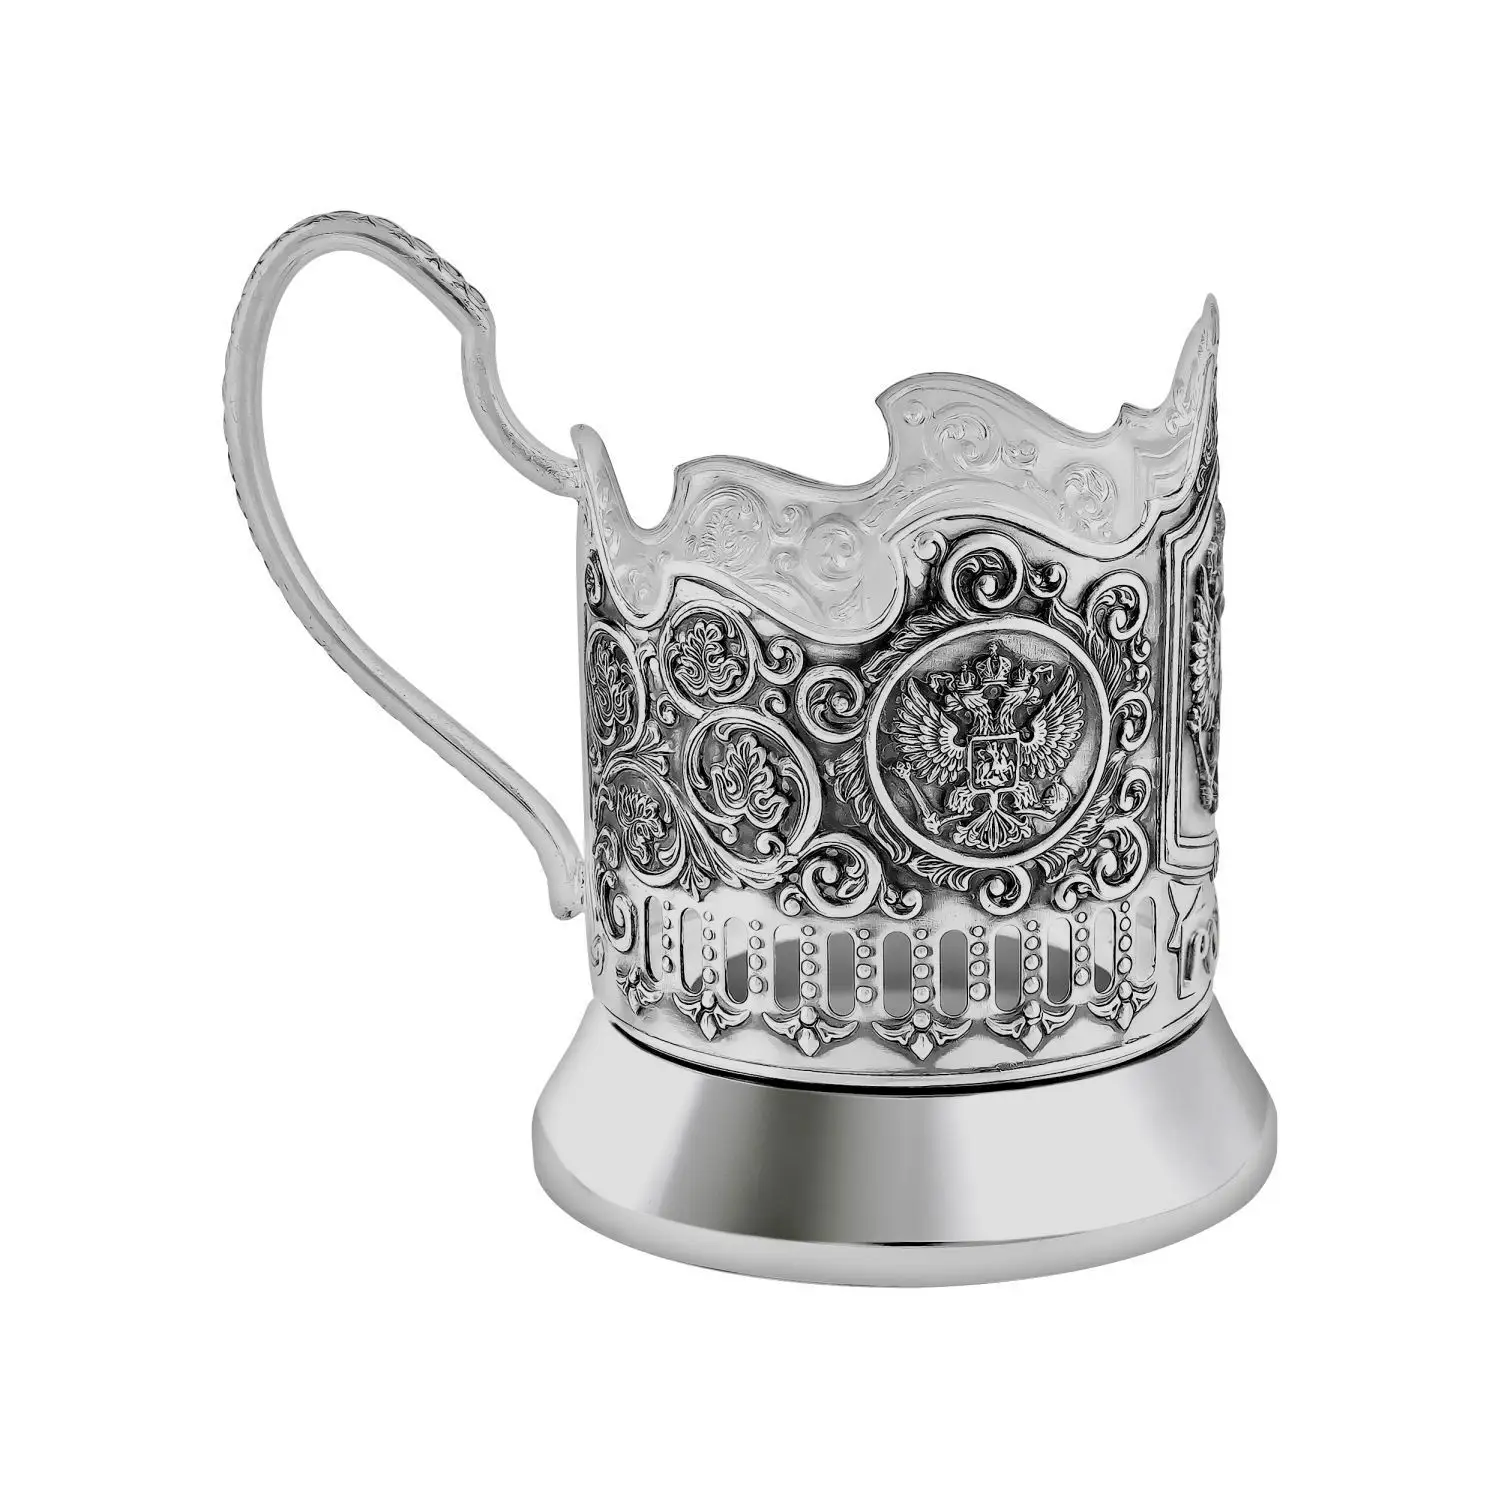 Набор для чая "Русский мельхиор Герб": ложка, стакан,подстаканник посеребренный